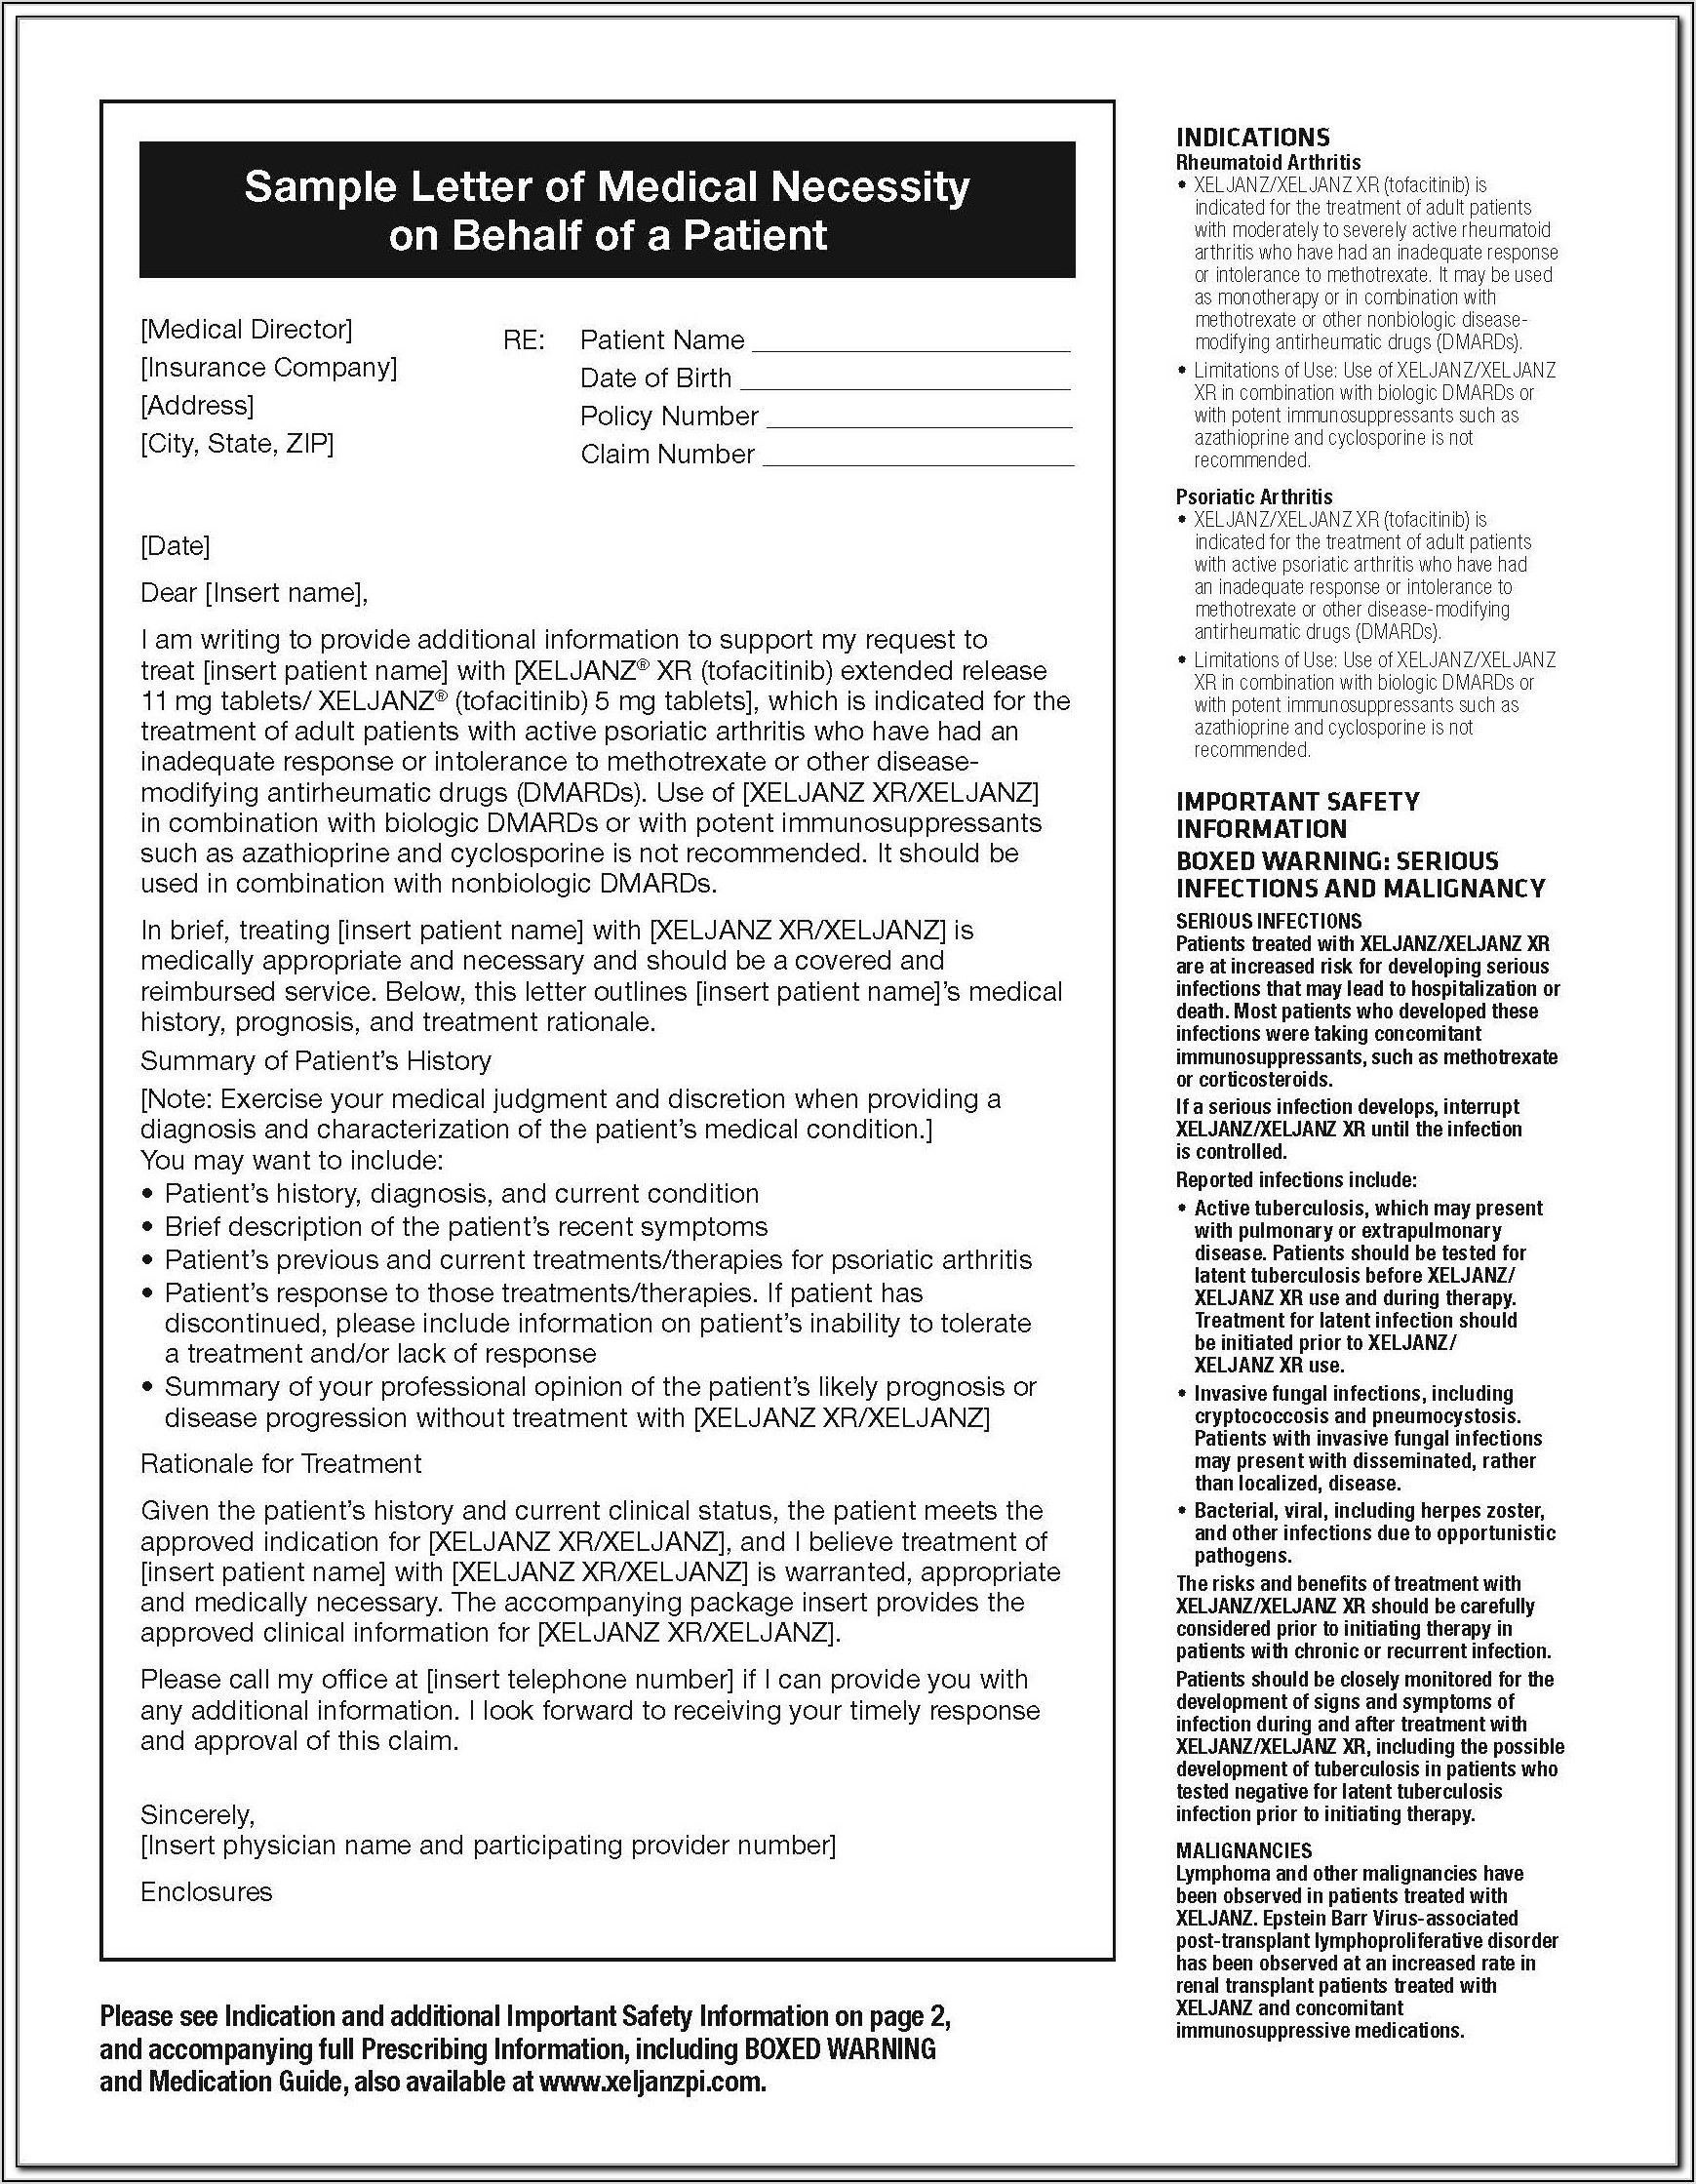 Forest Pharmaceuticals Patient Assistance Program Application Form